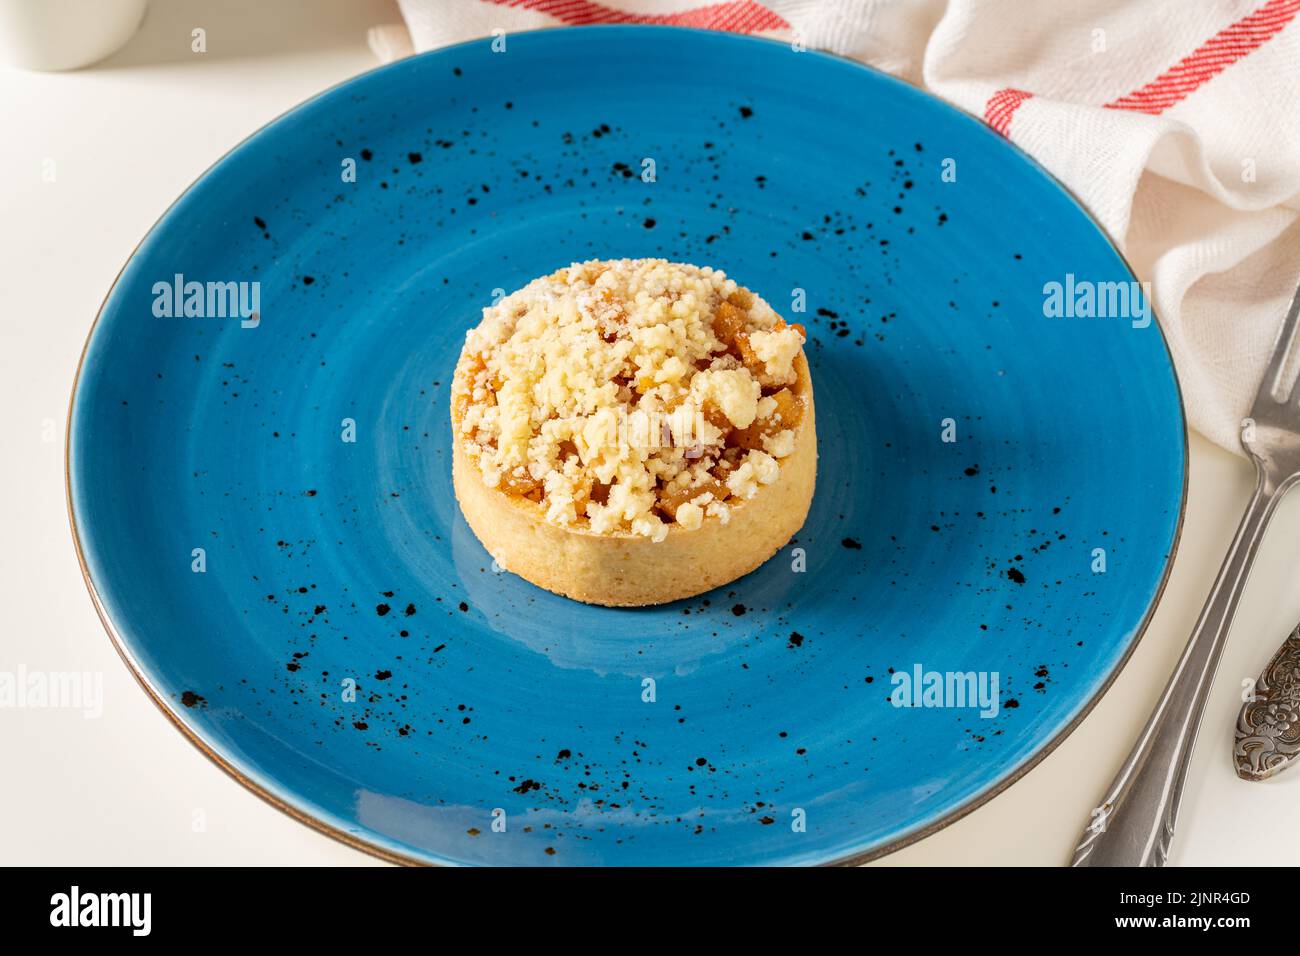 Pastel de manzana recién horneado en una porción en un plato de porcelana azul Foto de stock